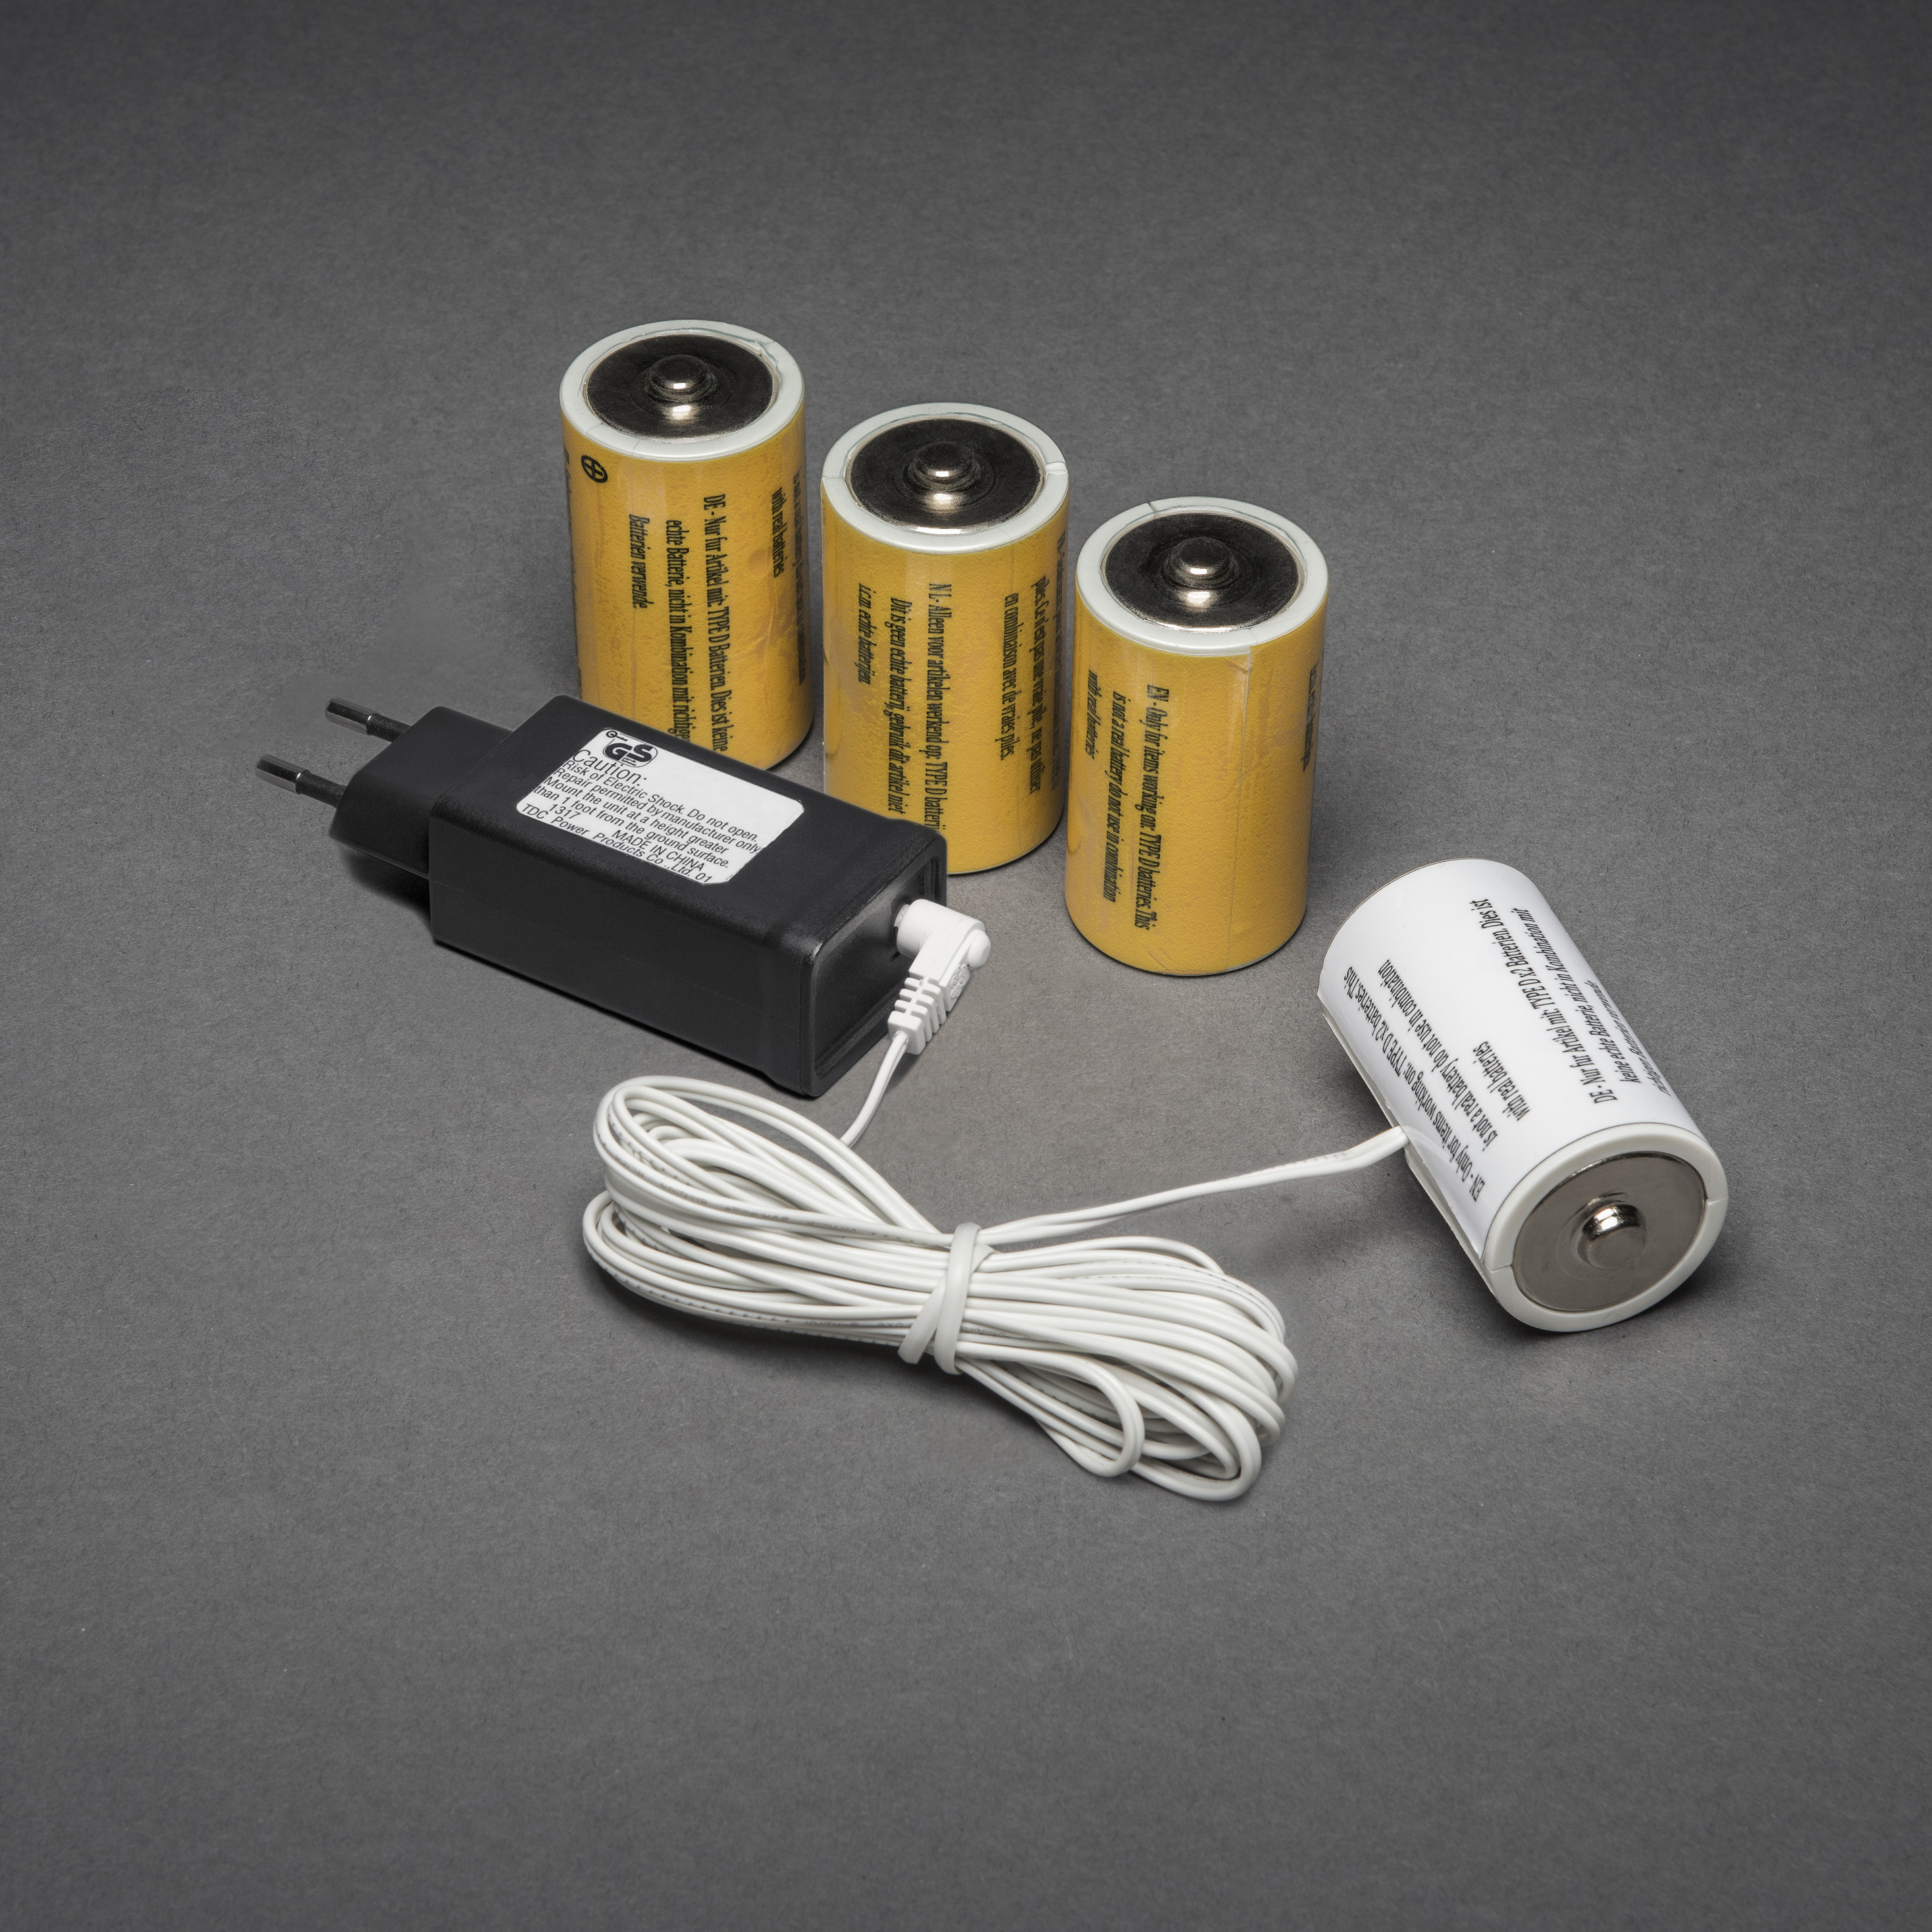 Adapter voor batterijartikelen met 4x D 1.5V batterijen